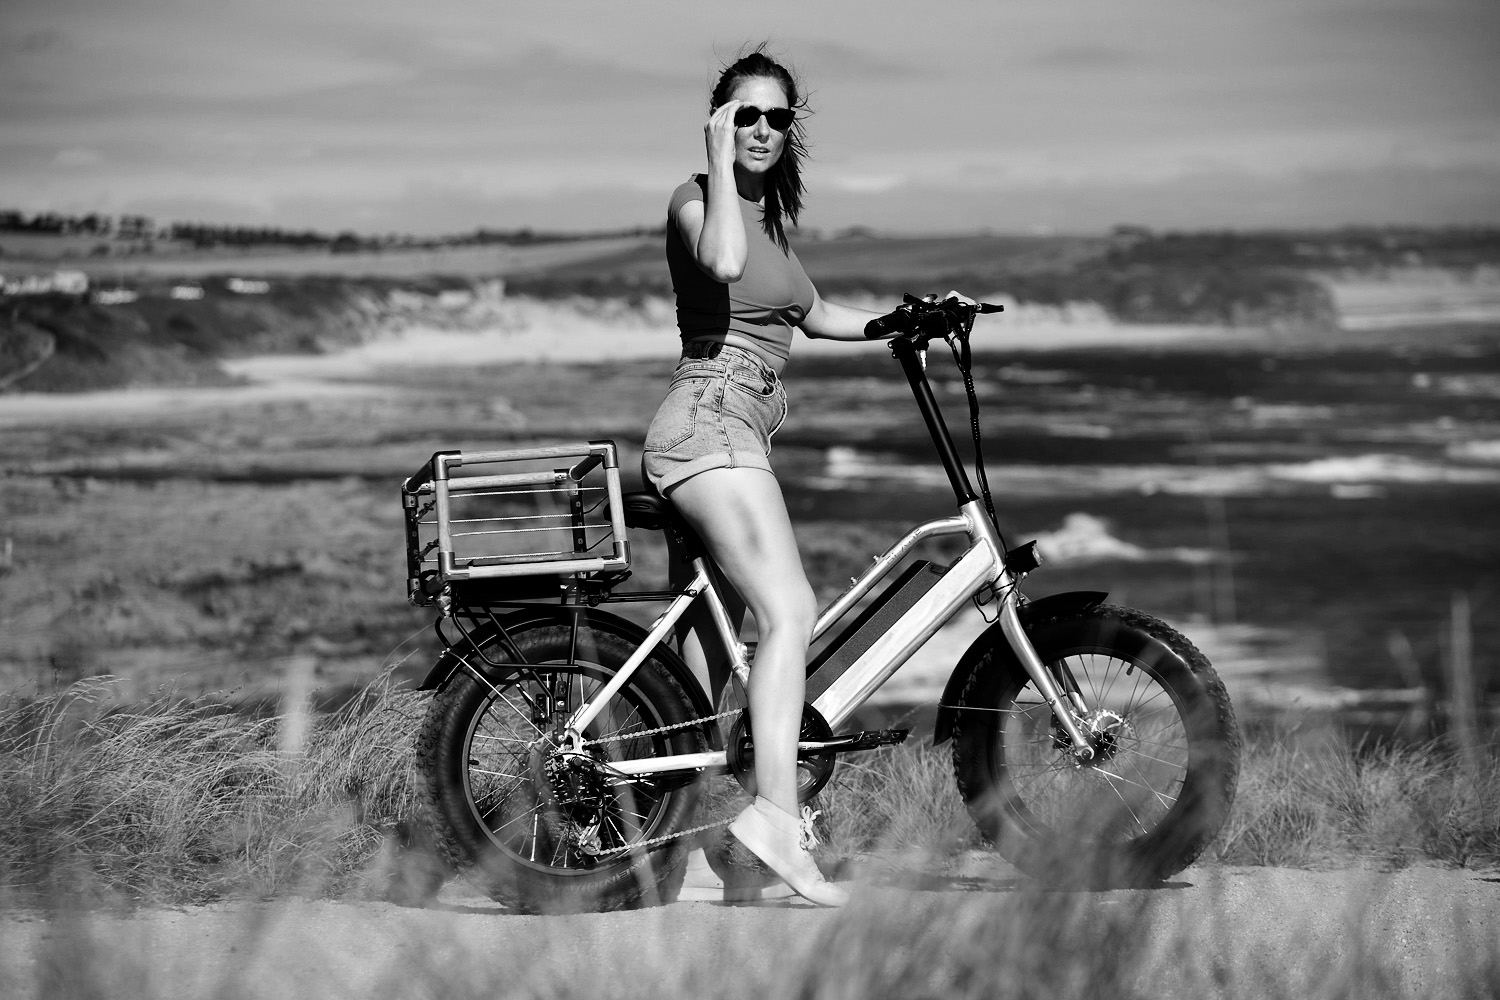 Blade Electric Bikes Perth Caravan & Camping Show